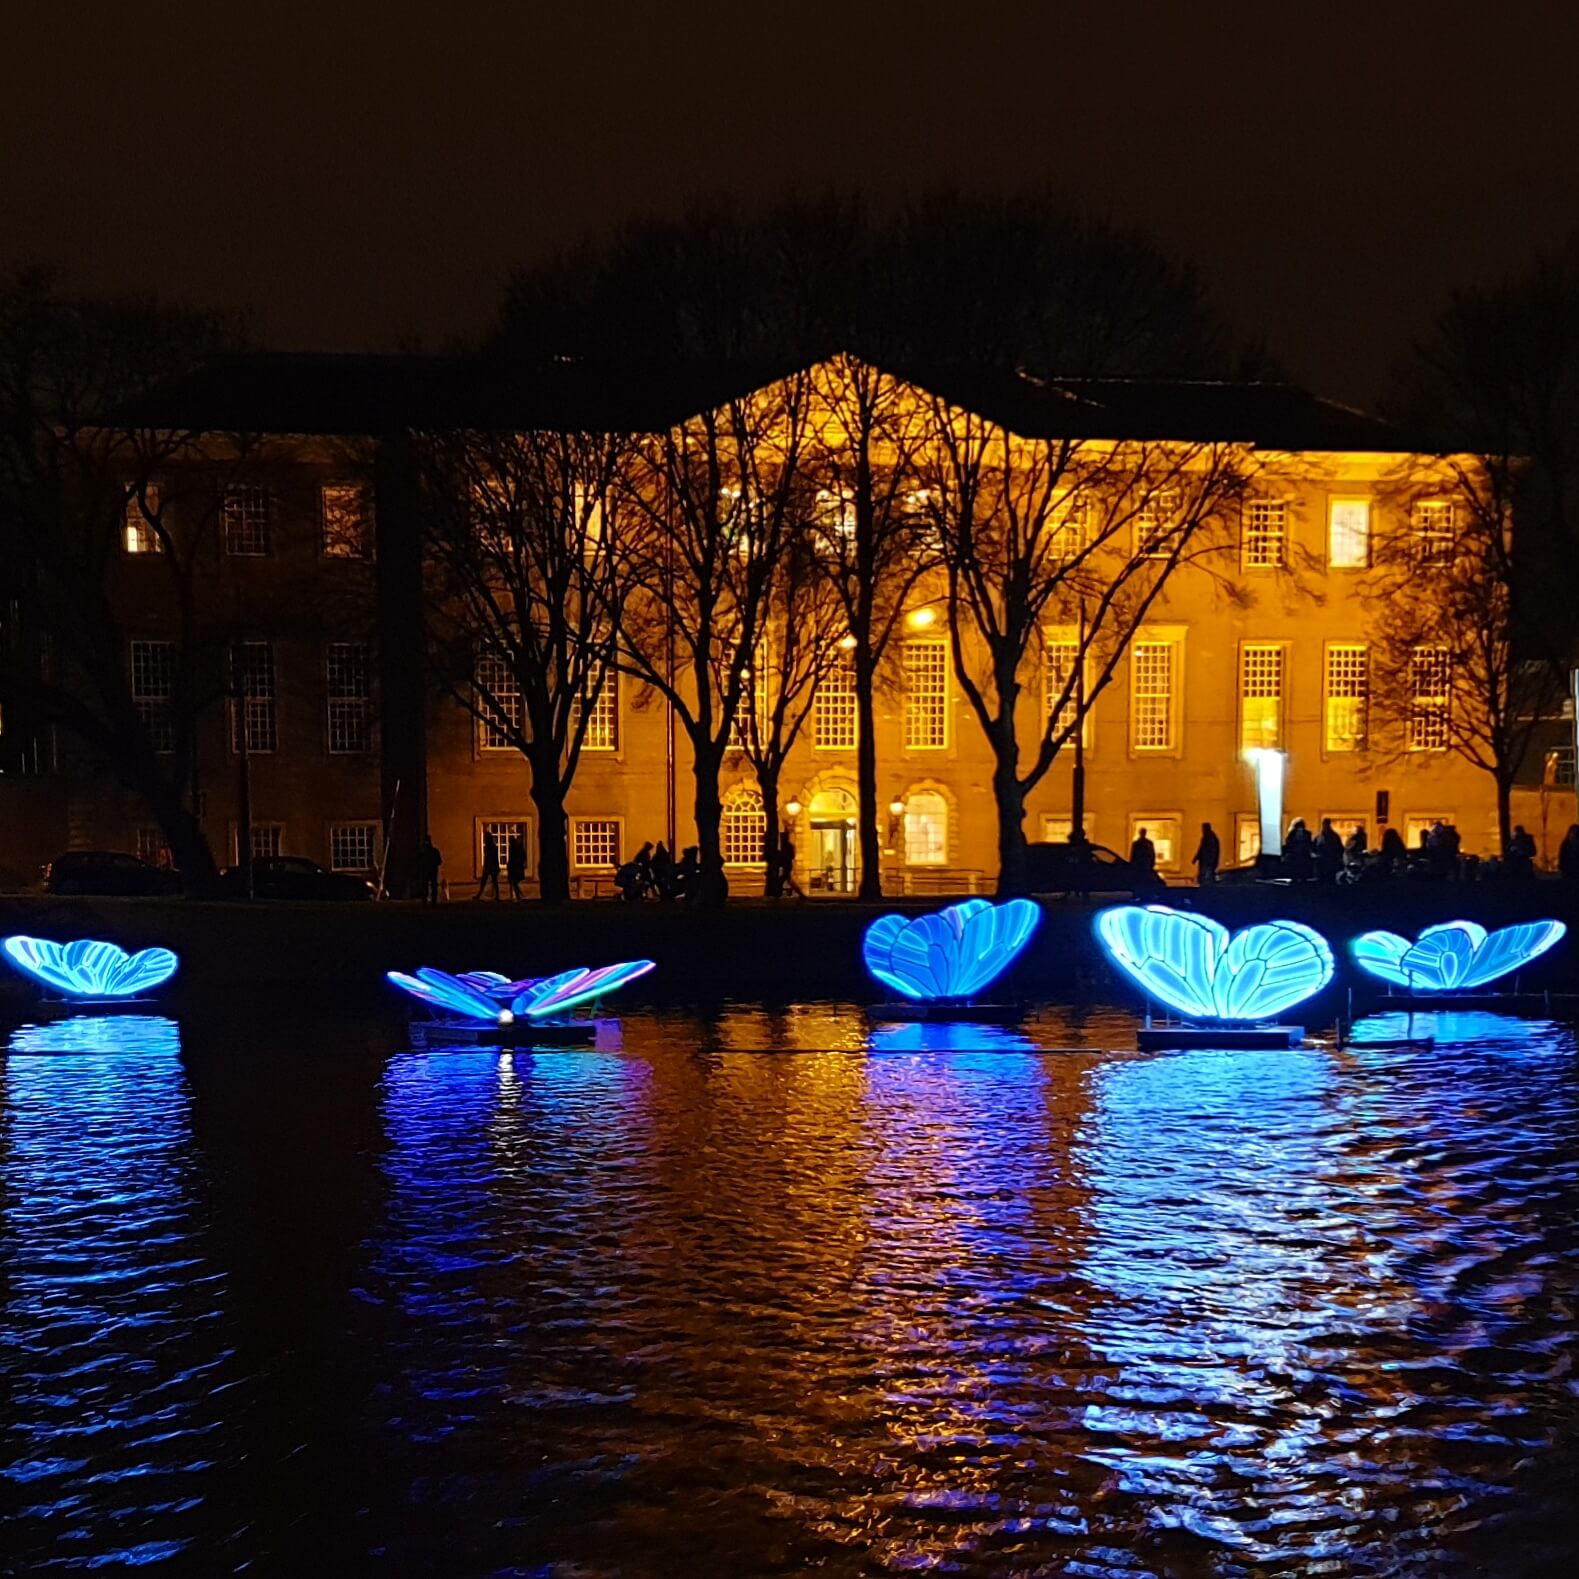 Fabeltjeskrant boottocht voor kinderen bij het Amsterdam Light Festival - kunstwerk Butterfly Effect met vlinders in het water